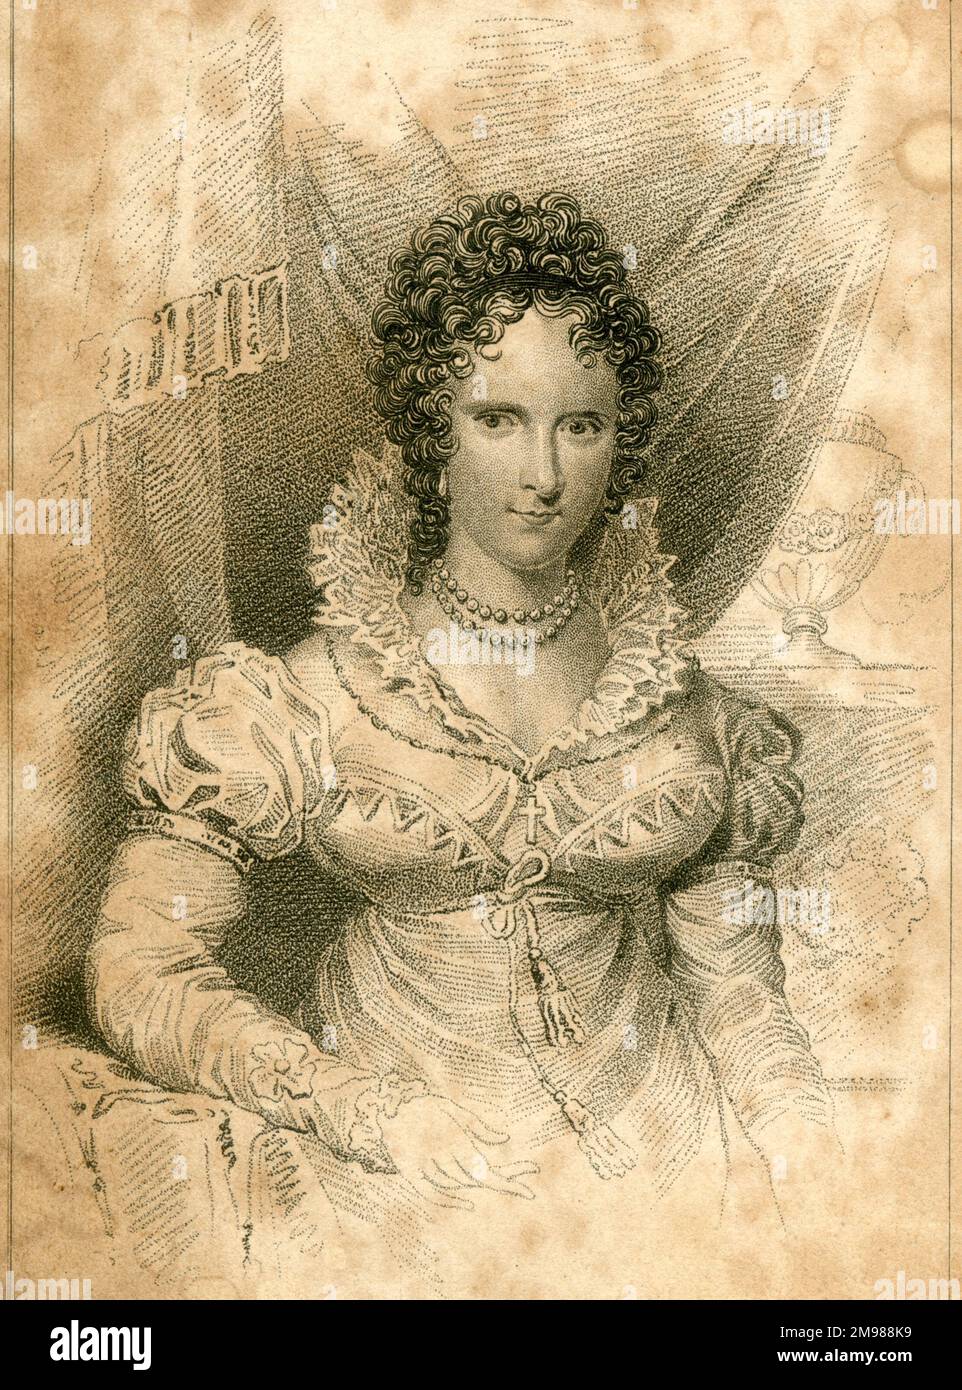 Adelaide von Sachsen-Meiningen (1792-1849), Herzogin von Clarence, Ehefrau von Prinz William, Herzog von Clarence. Als ihr Mann König William IV. Wurde, wurde sie Königin Adelaide (regierte 1830-1849). Stockfoto